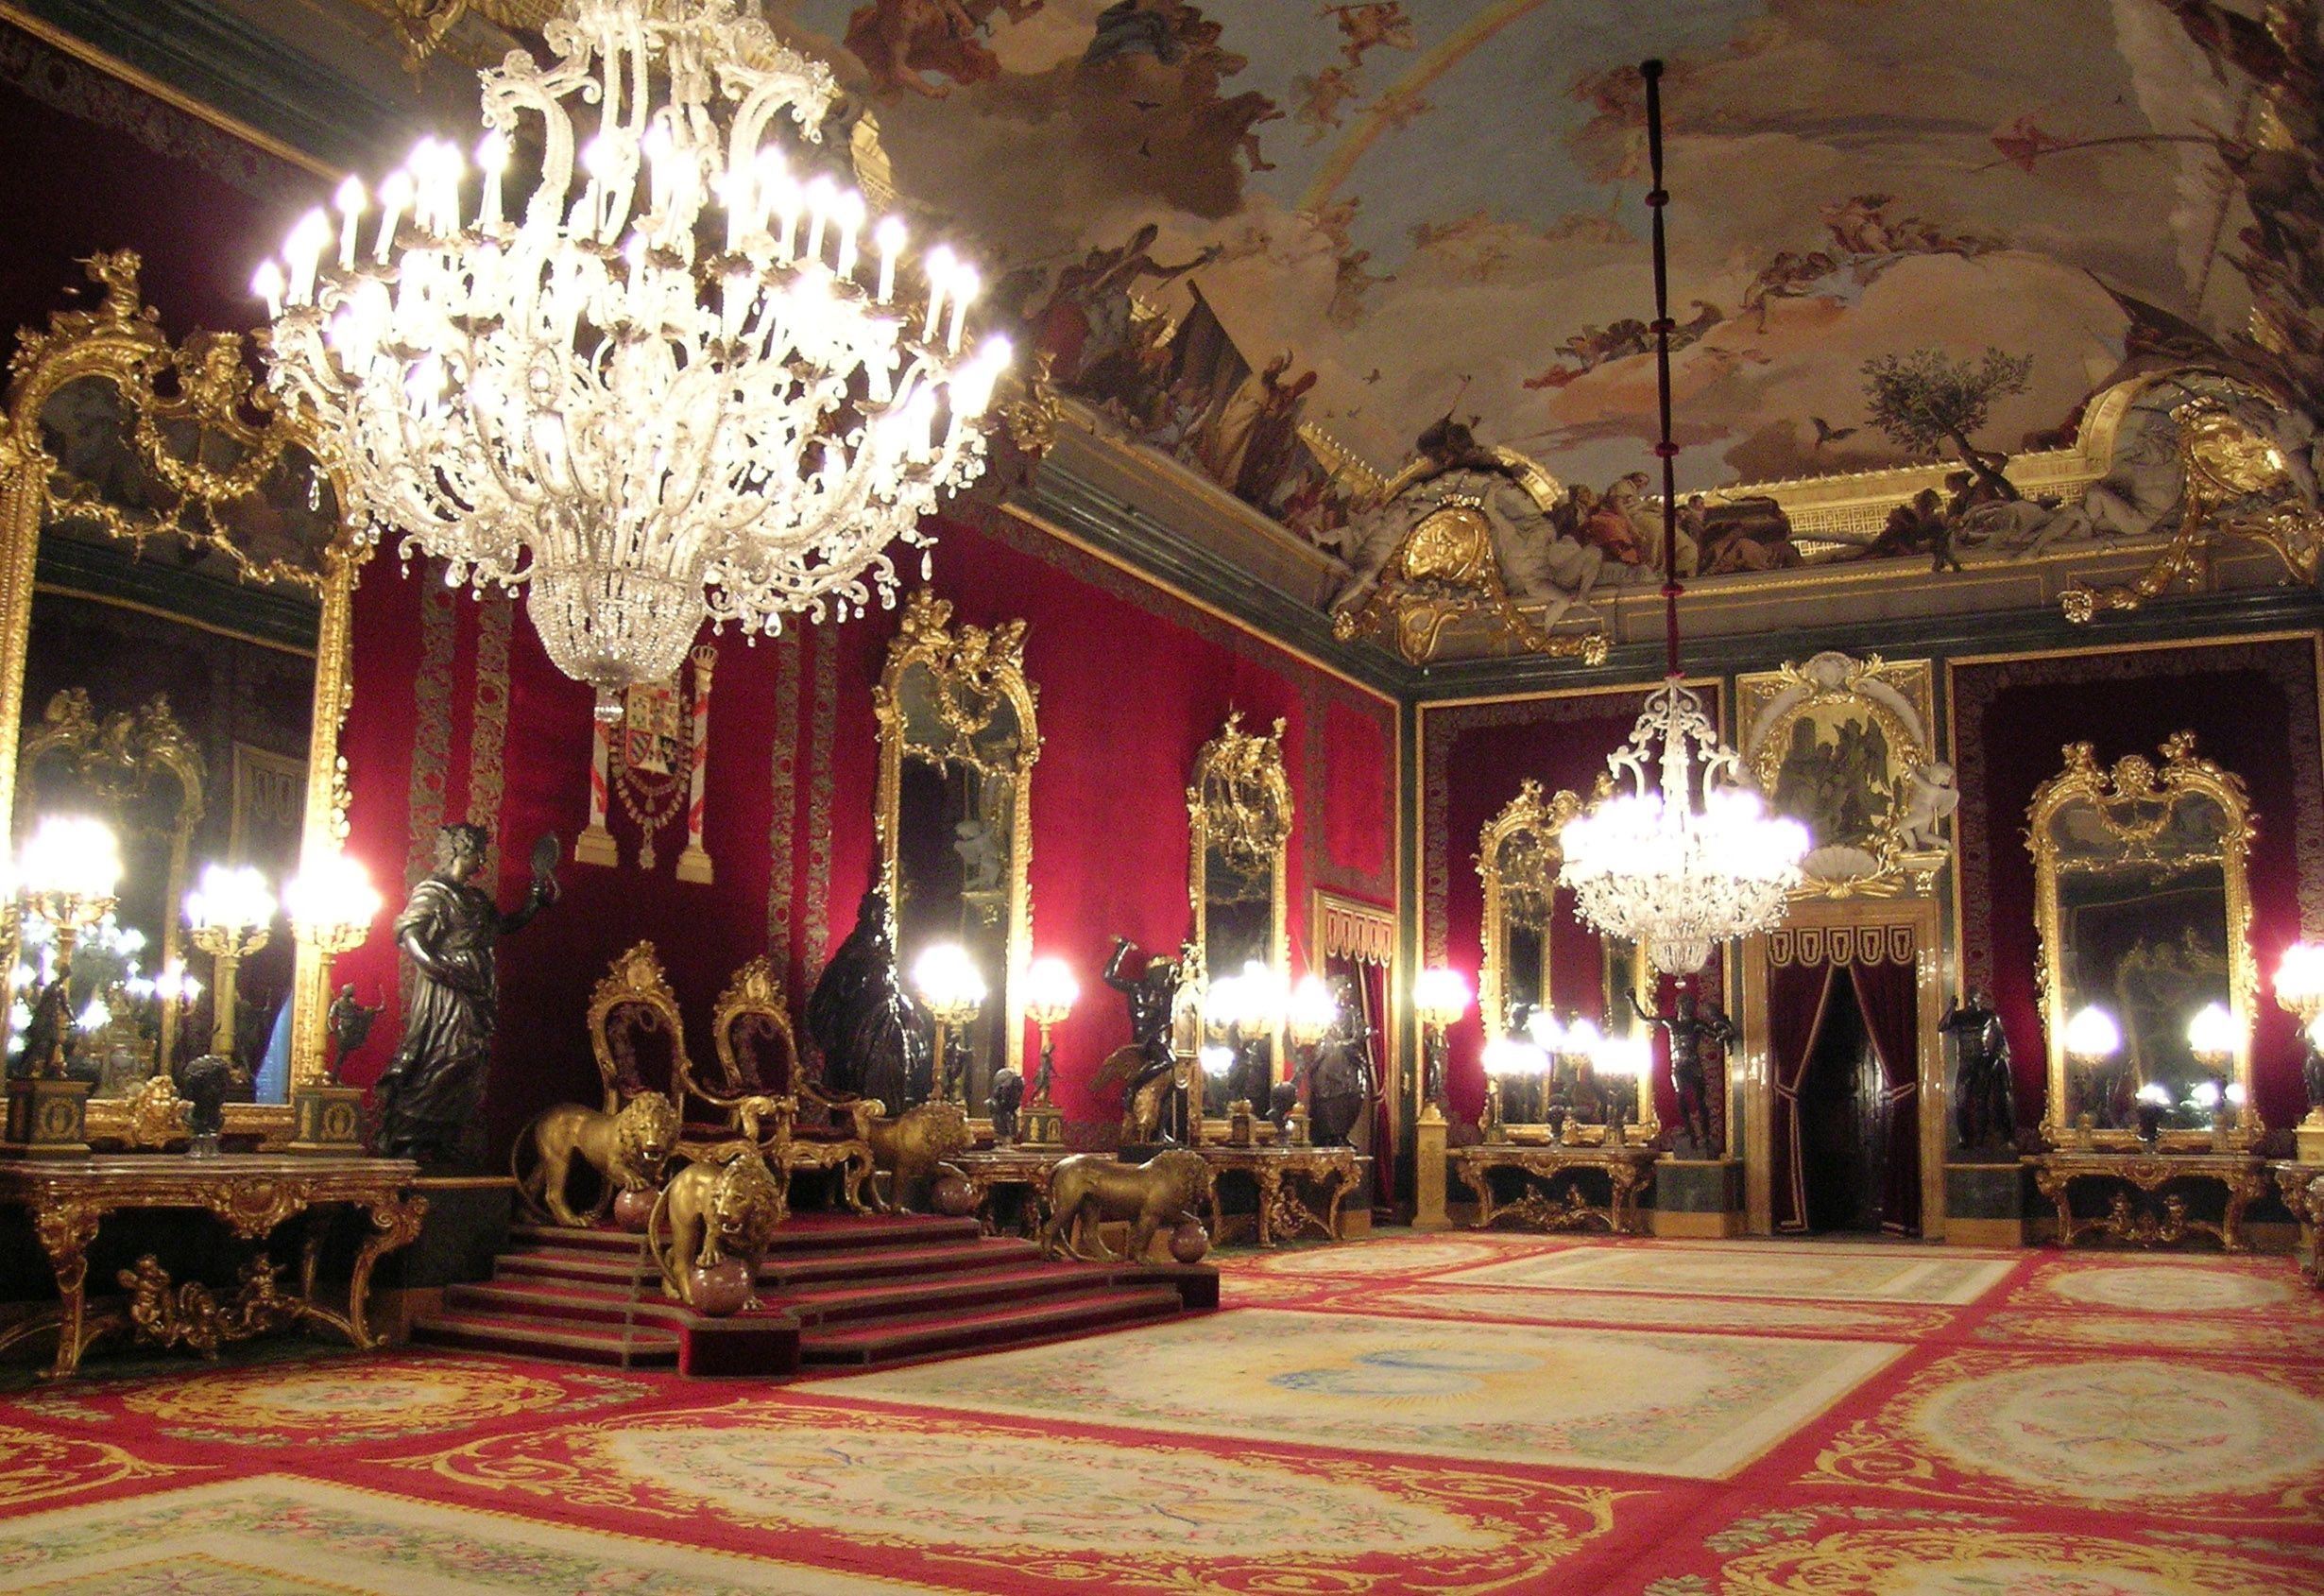 Резиденция королей на юге испании красный замок. Королевский дворец Мадрид залы. Королевский дворец Palacio real Мадрид. Королевский дворец в Мадриде внутри. Тронный зал короля Испании.